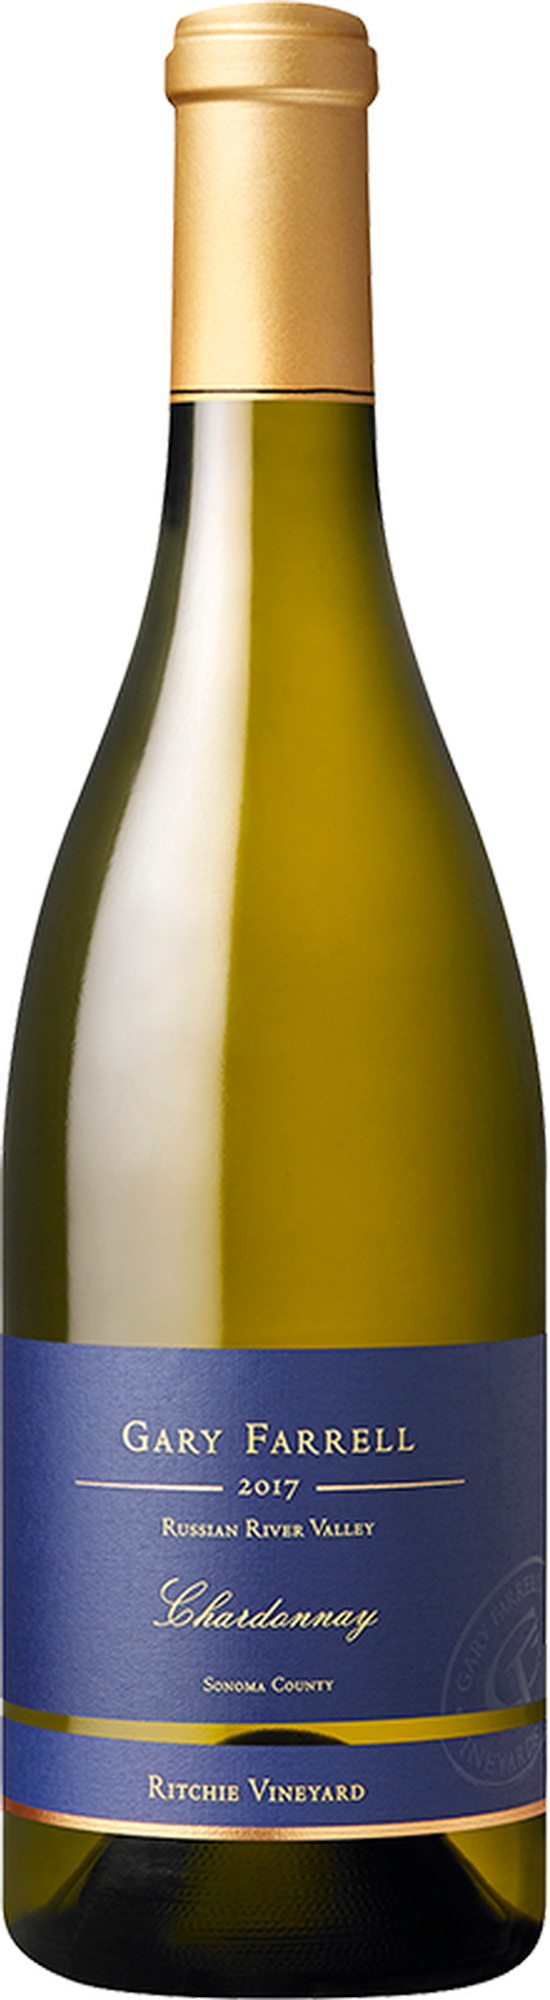 2017 Ritchie Vineyard Chardonnay